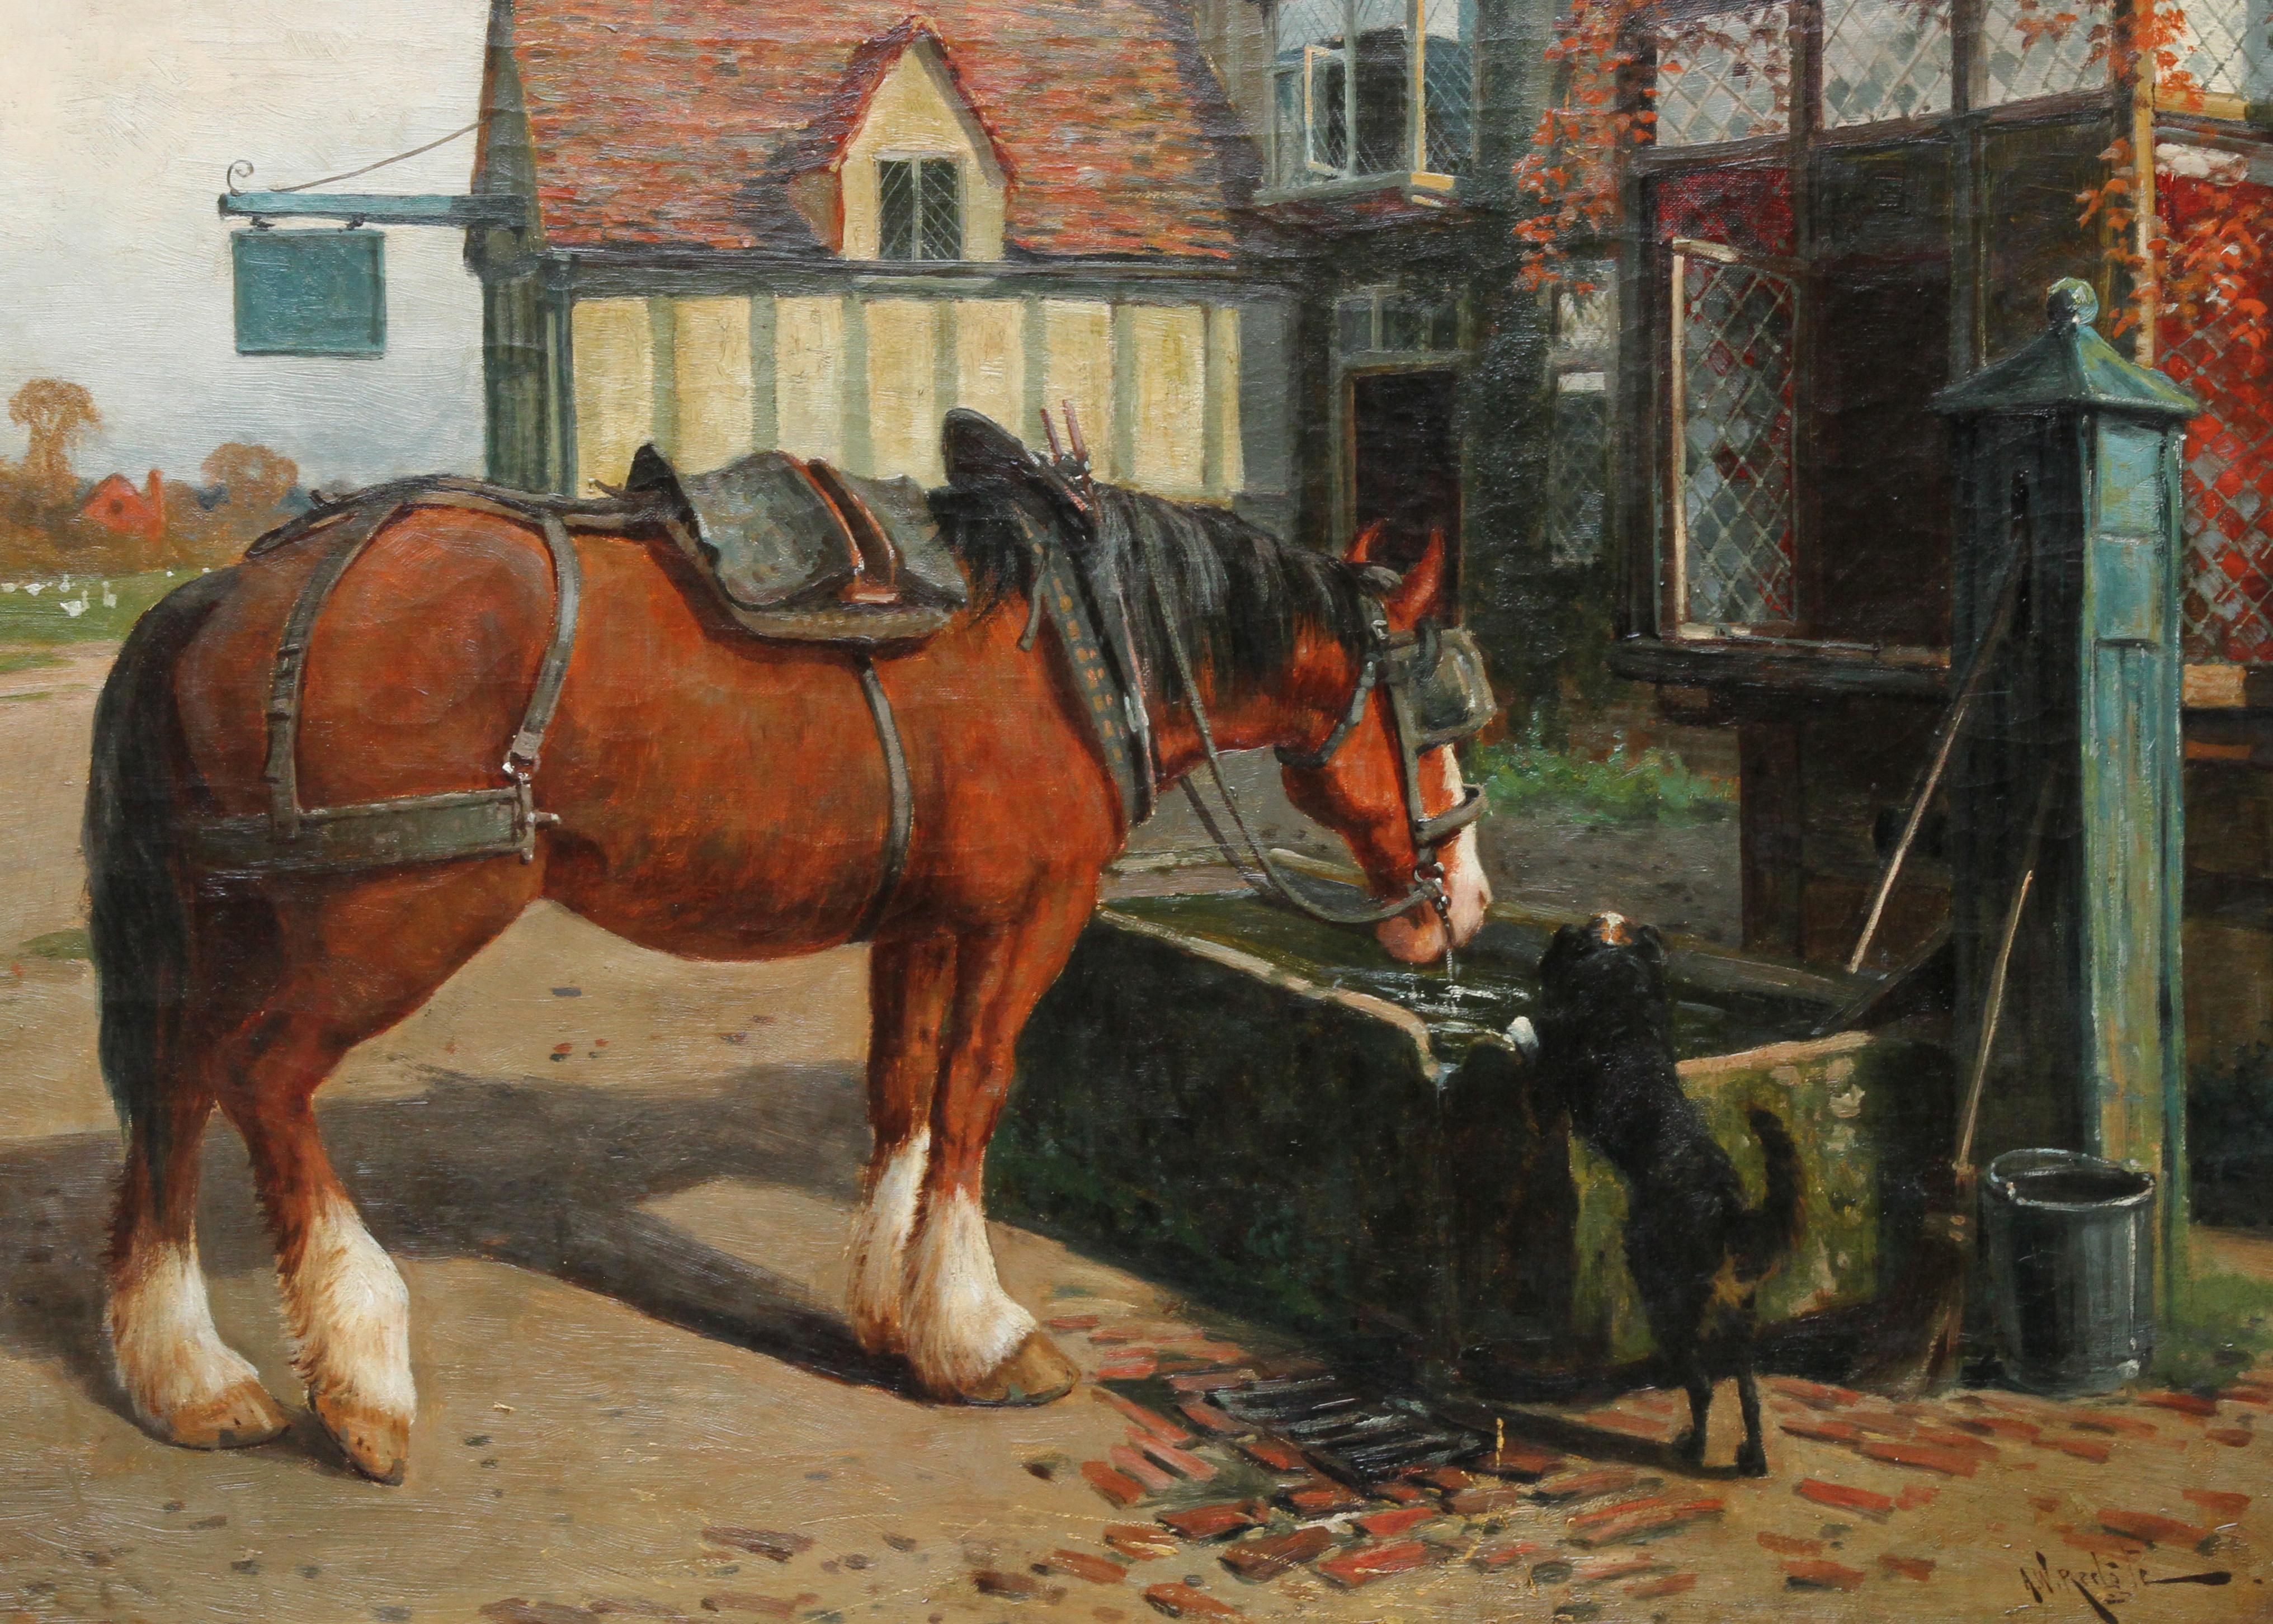 Bauernhofpferd in Trough vor einer Tavern – britisches viktorianisches Ölgemälde (Realismus), Painting, von Arthur William Redgate